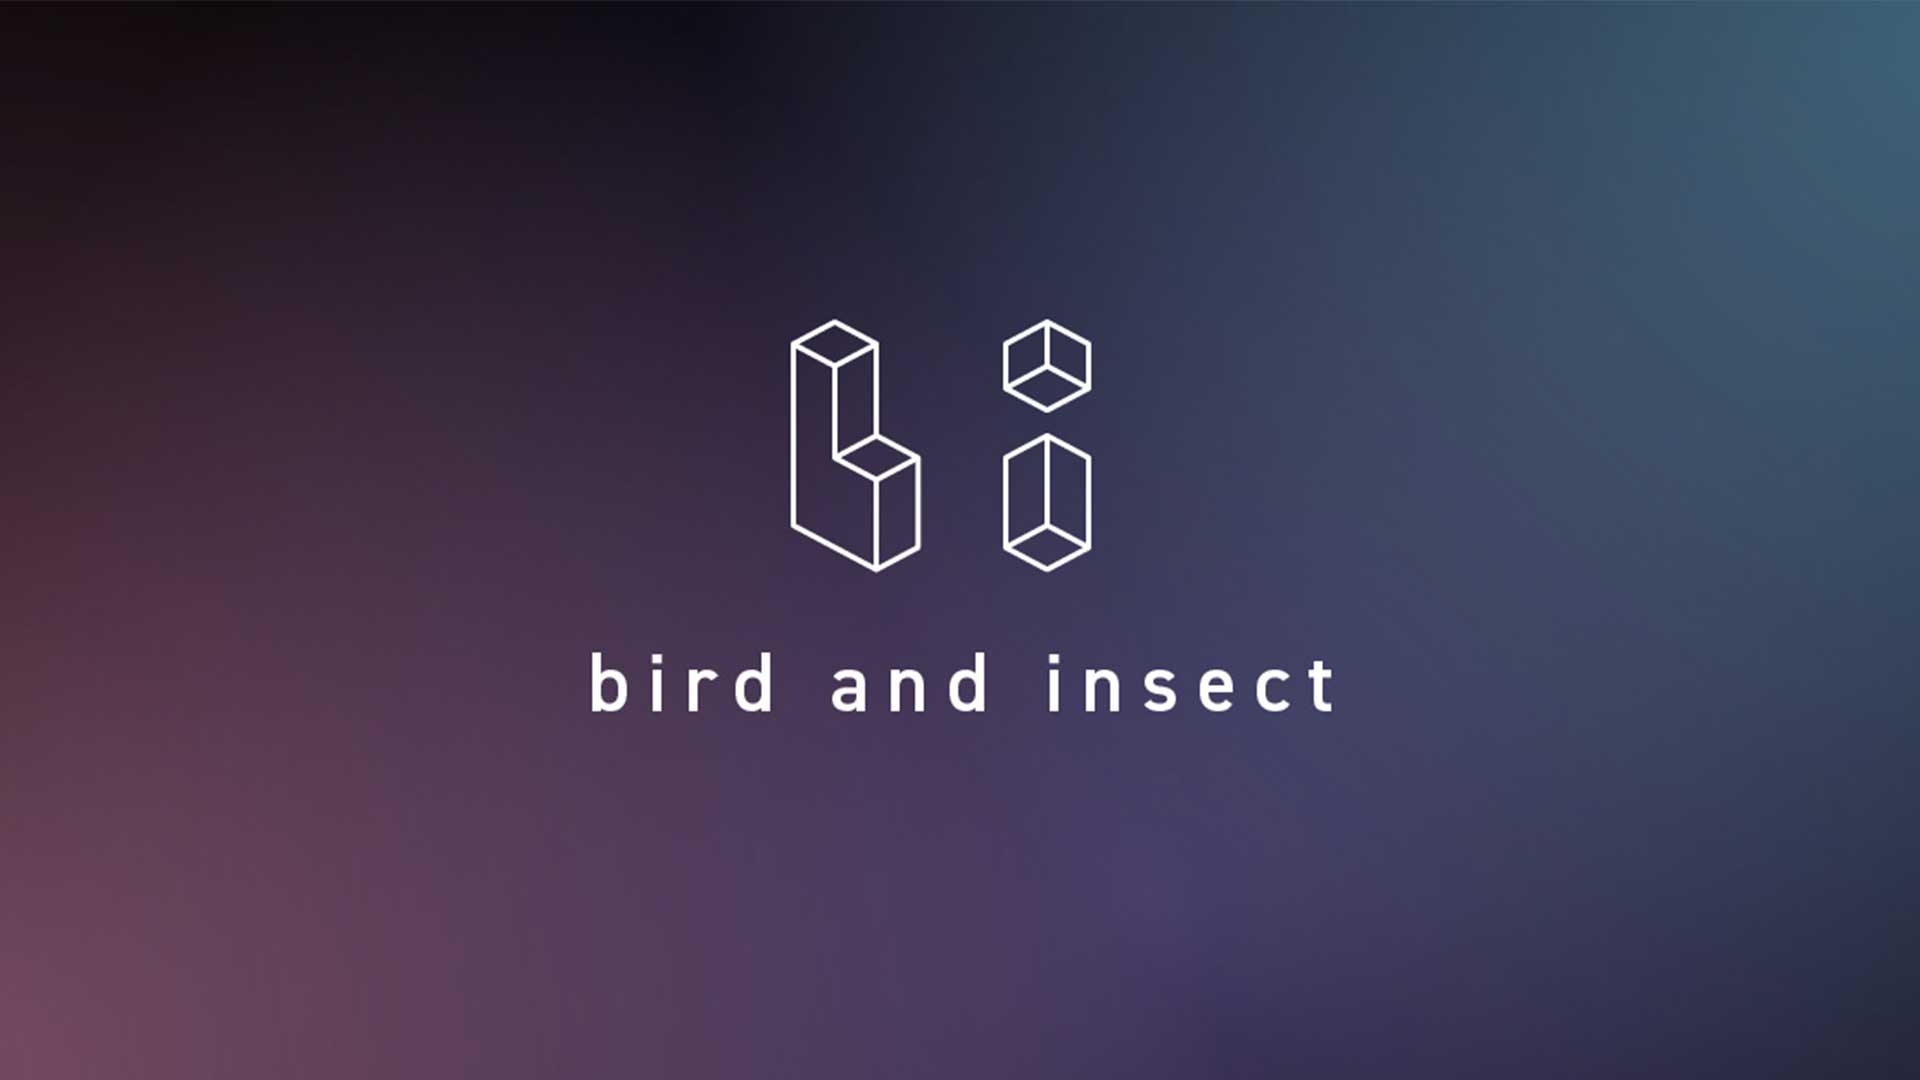 株式会社bird and insect